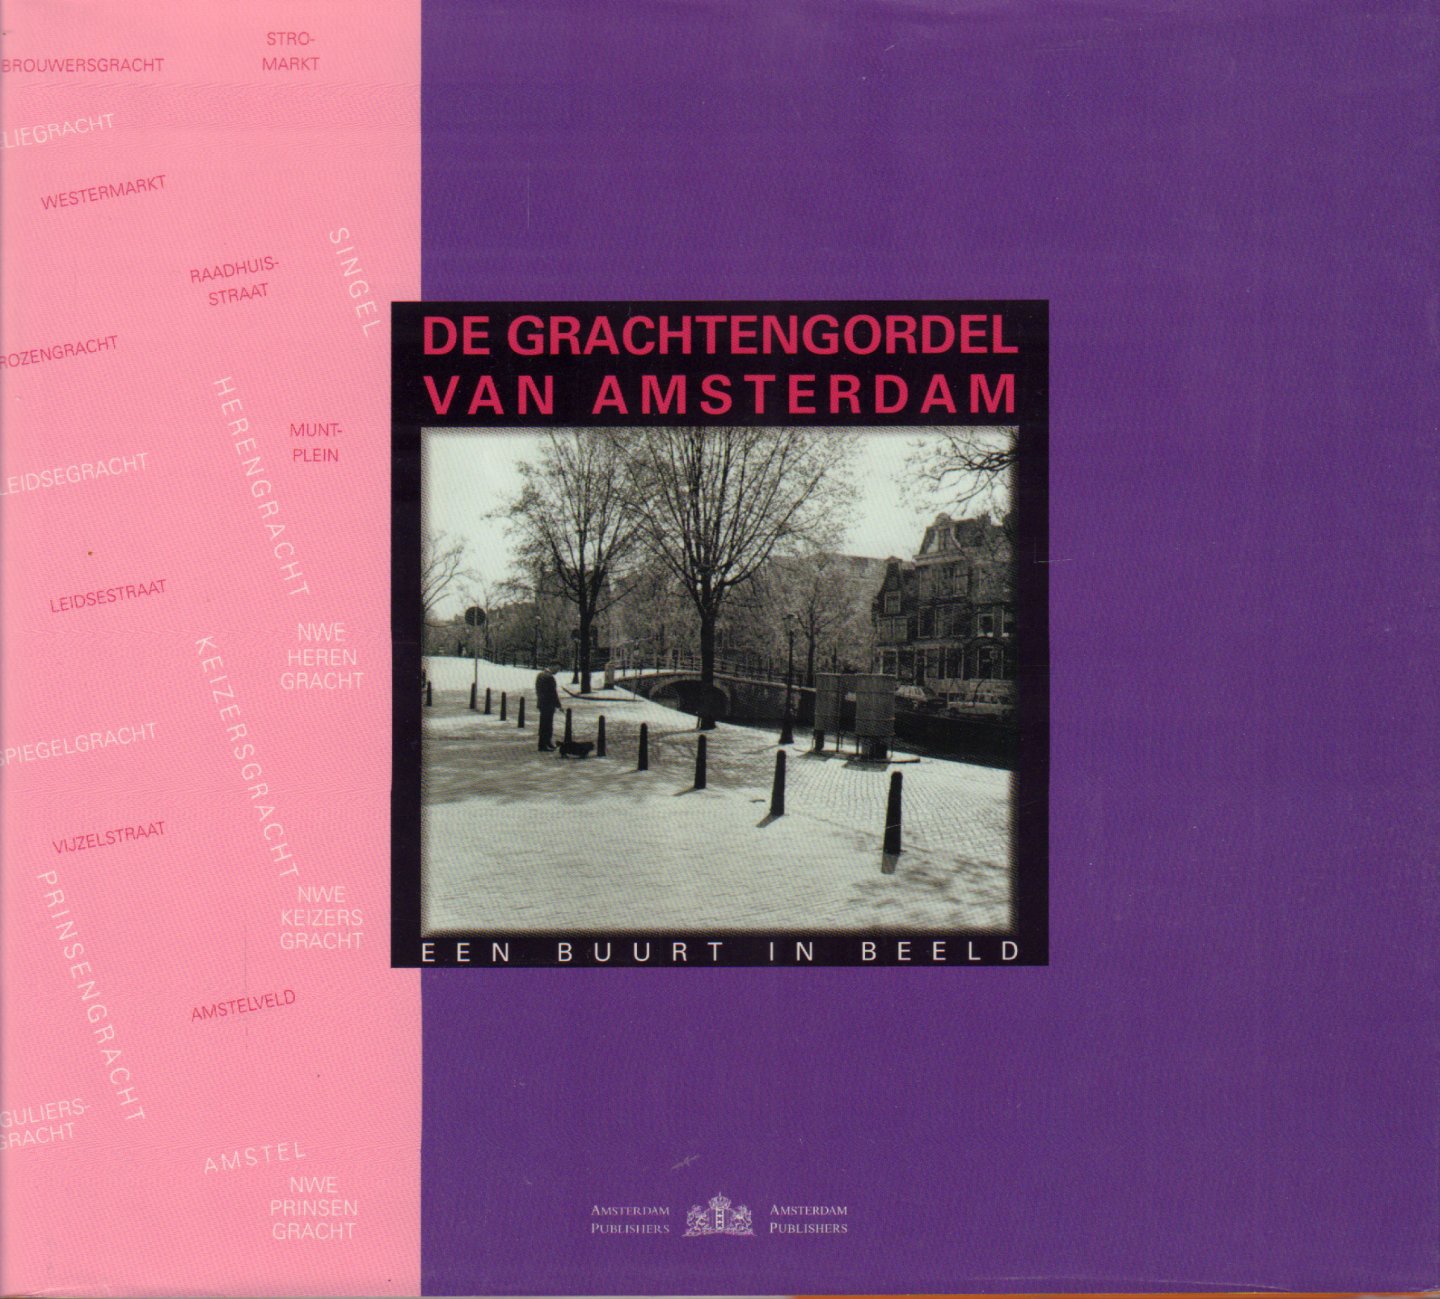 Vries, Menno de (samenstelling) - De Grachtengordel van Amsterdam (Een buurt in beeld), 95 pag. hardcover + stofomslag, zeer goede staat